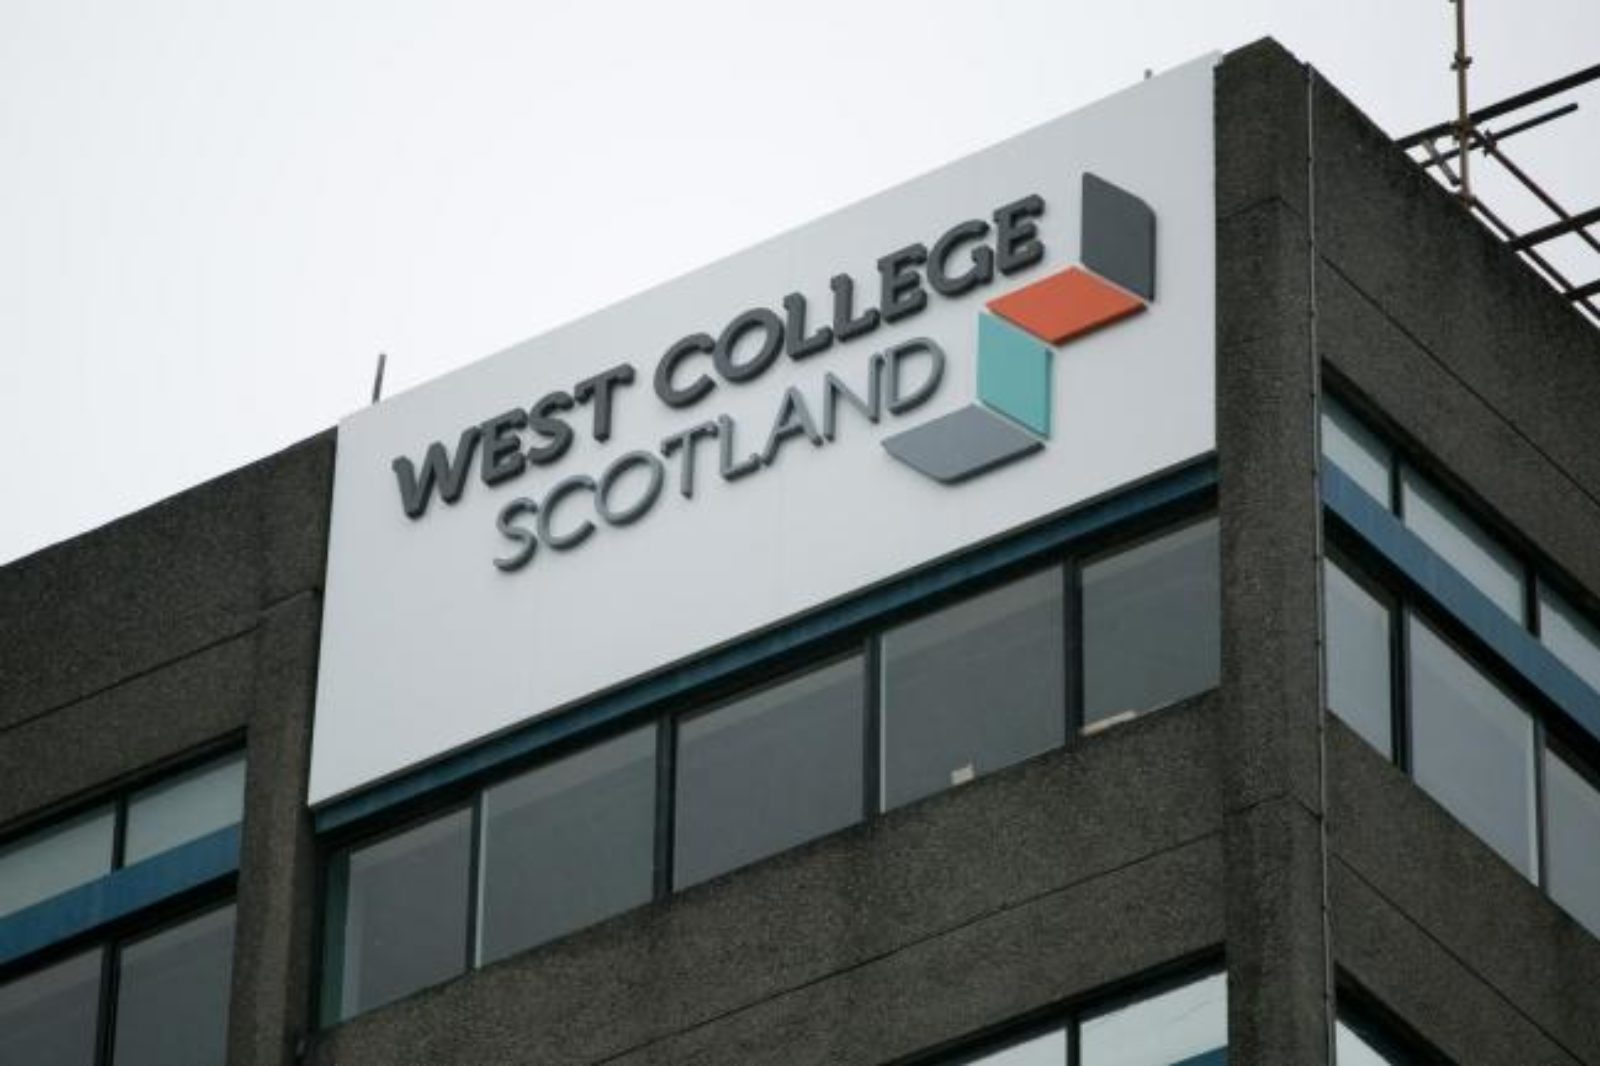 West College Scotland